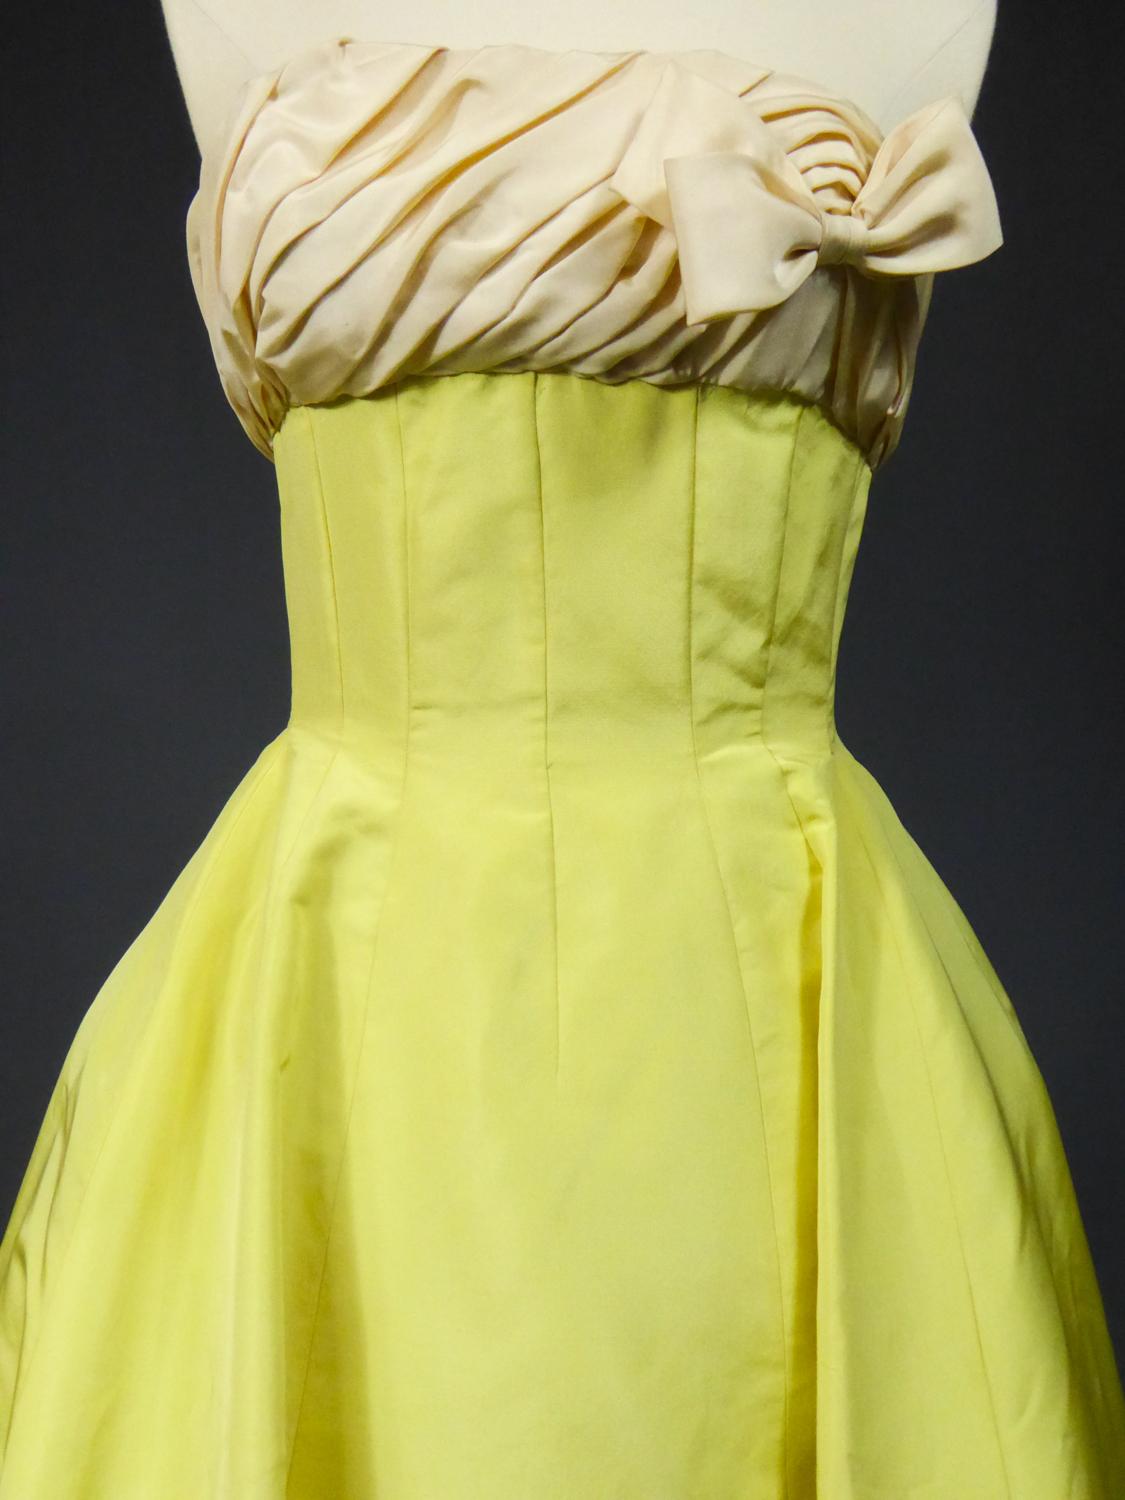 Um 1958

Frankreich

Gelbes Bananen-Ottoman-Kugelkleid aus Seidenfaille oder zeremonielles langes Kleid. Boniertes Mieder mit großem, tiefem Ausschnitt und cremefarbener, umgedrehter Faltenfaille auf der Brust, die mit einem seitlichen Knoten